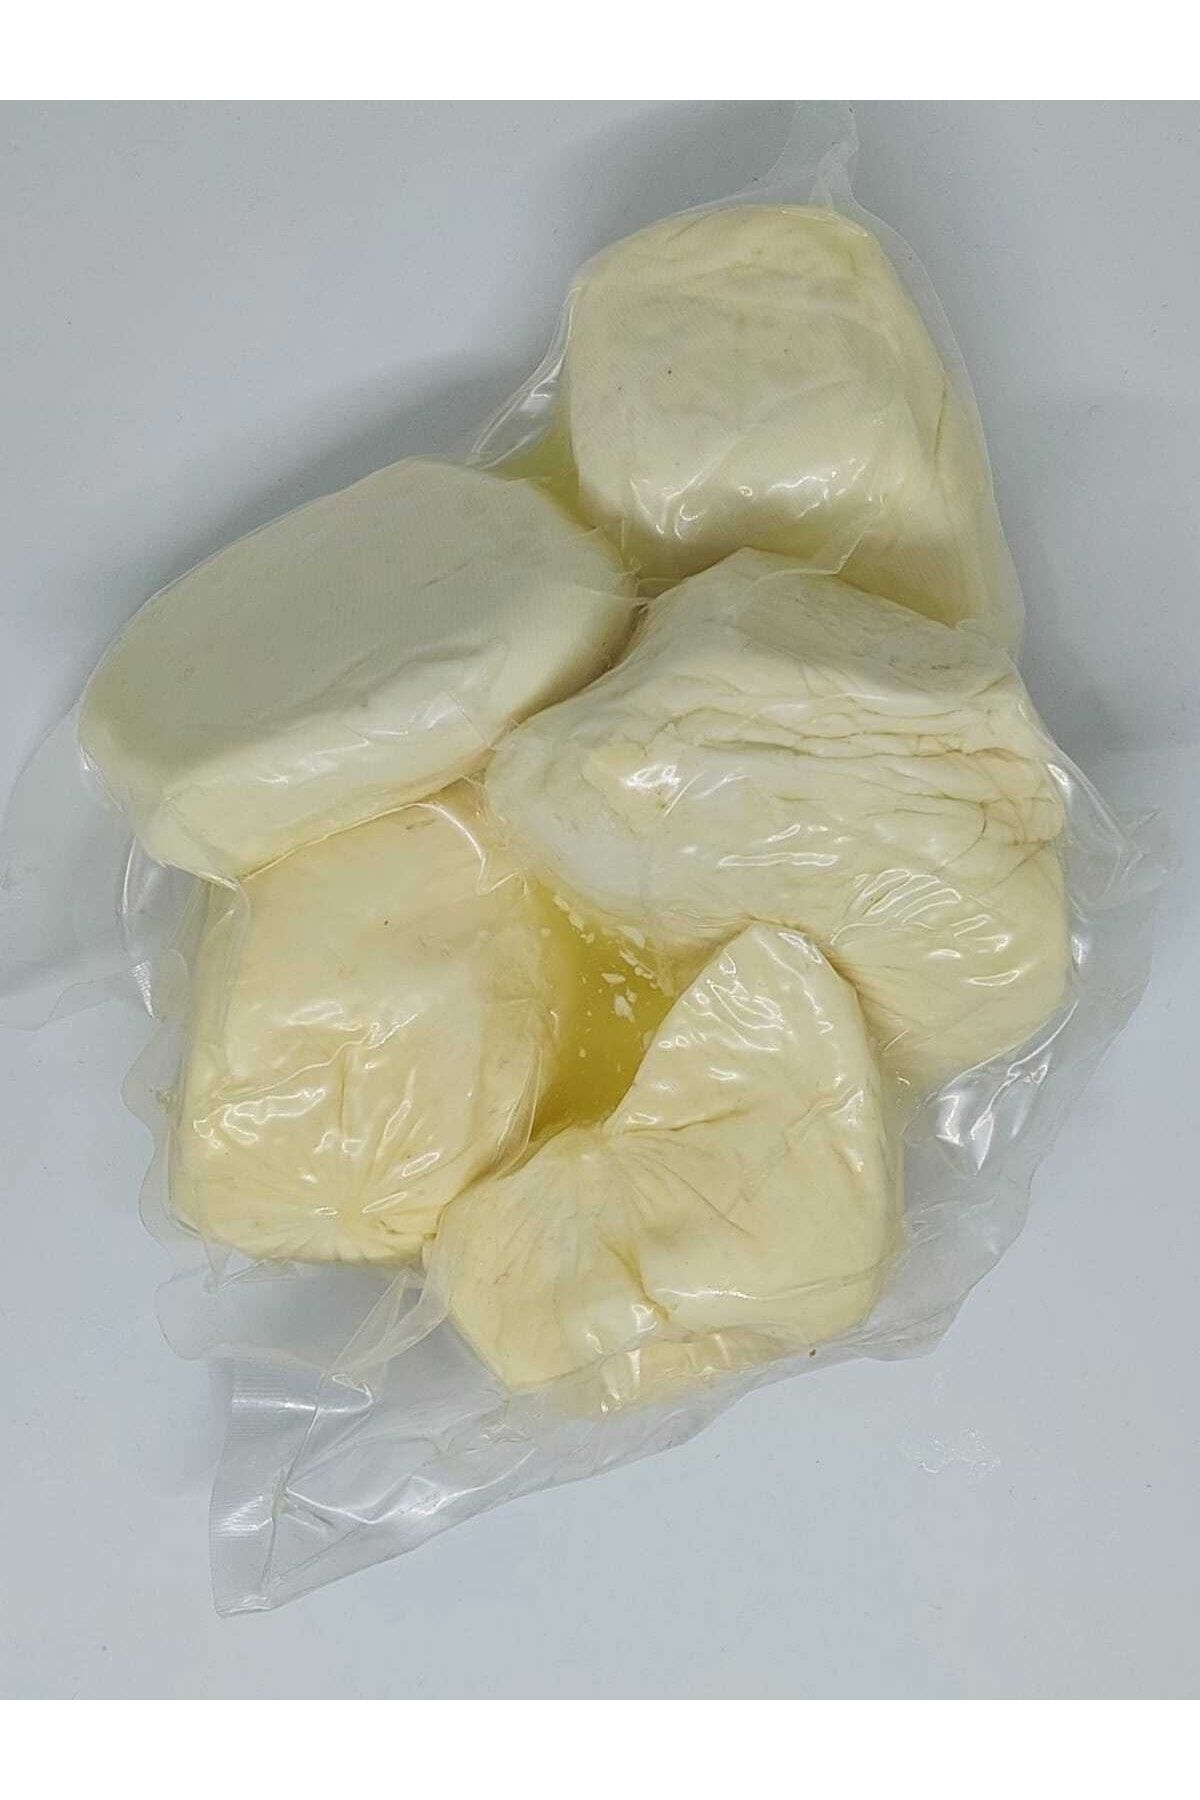 PEYNİRCİM COŞKUN YÖRESEL ÜRÜNLER Tam Yağlı Kara Keçi Peyniri %100 Doğal El Yapımı 1kg